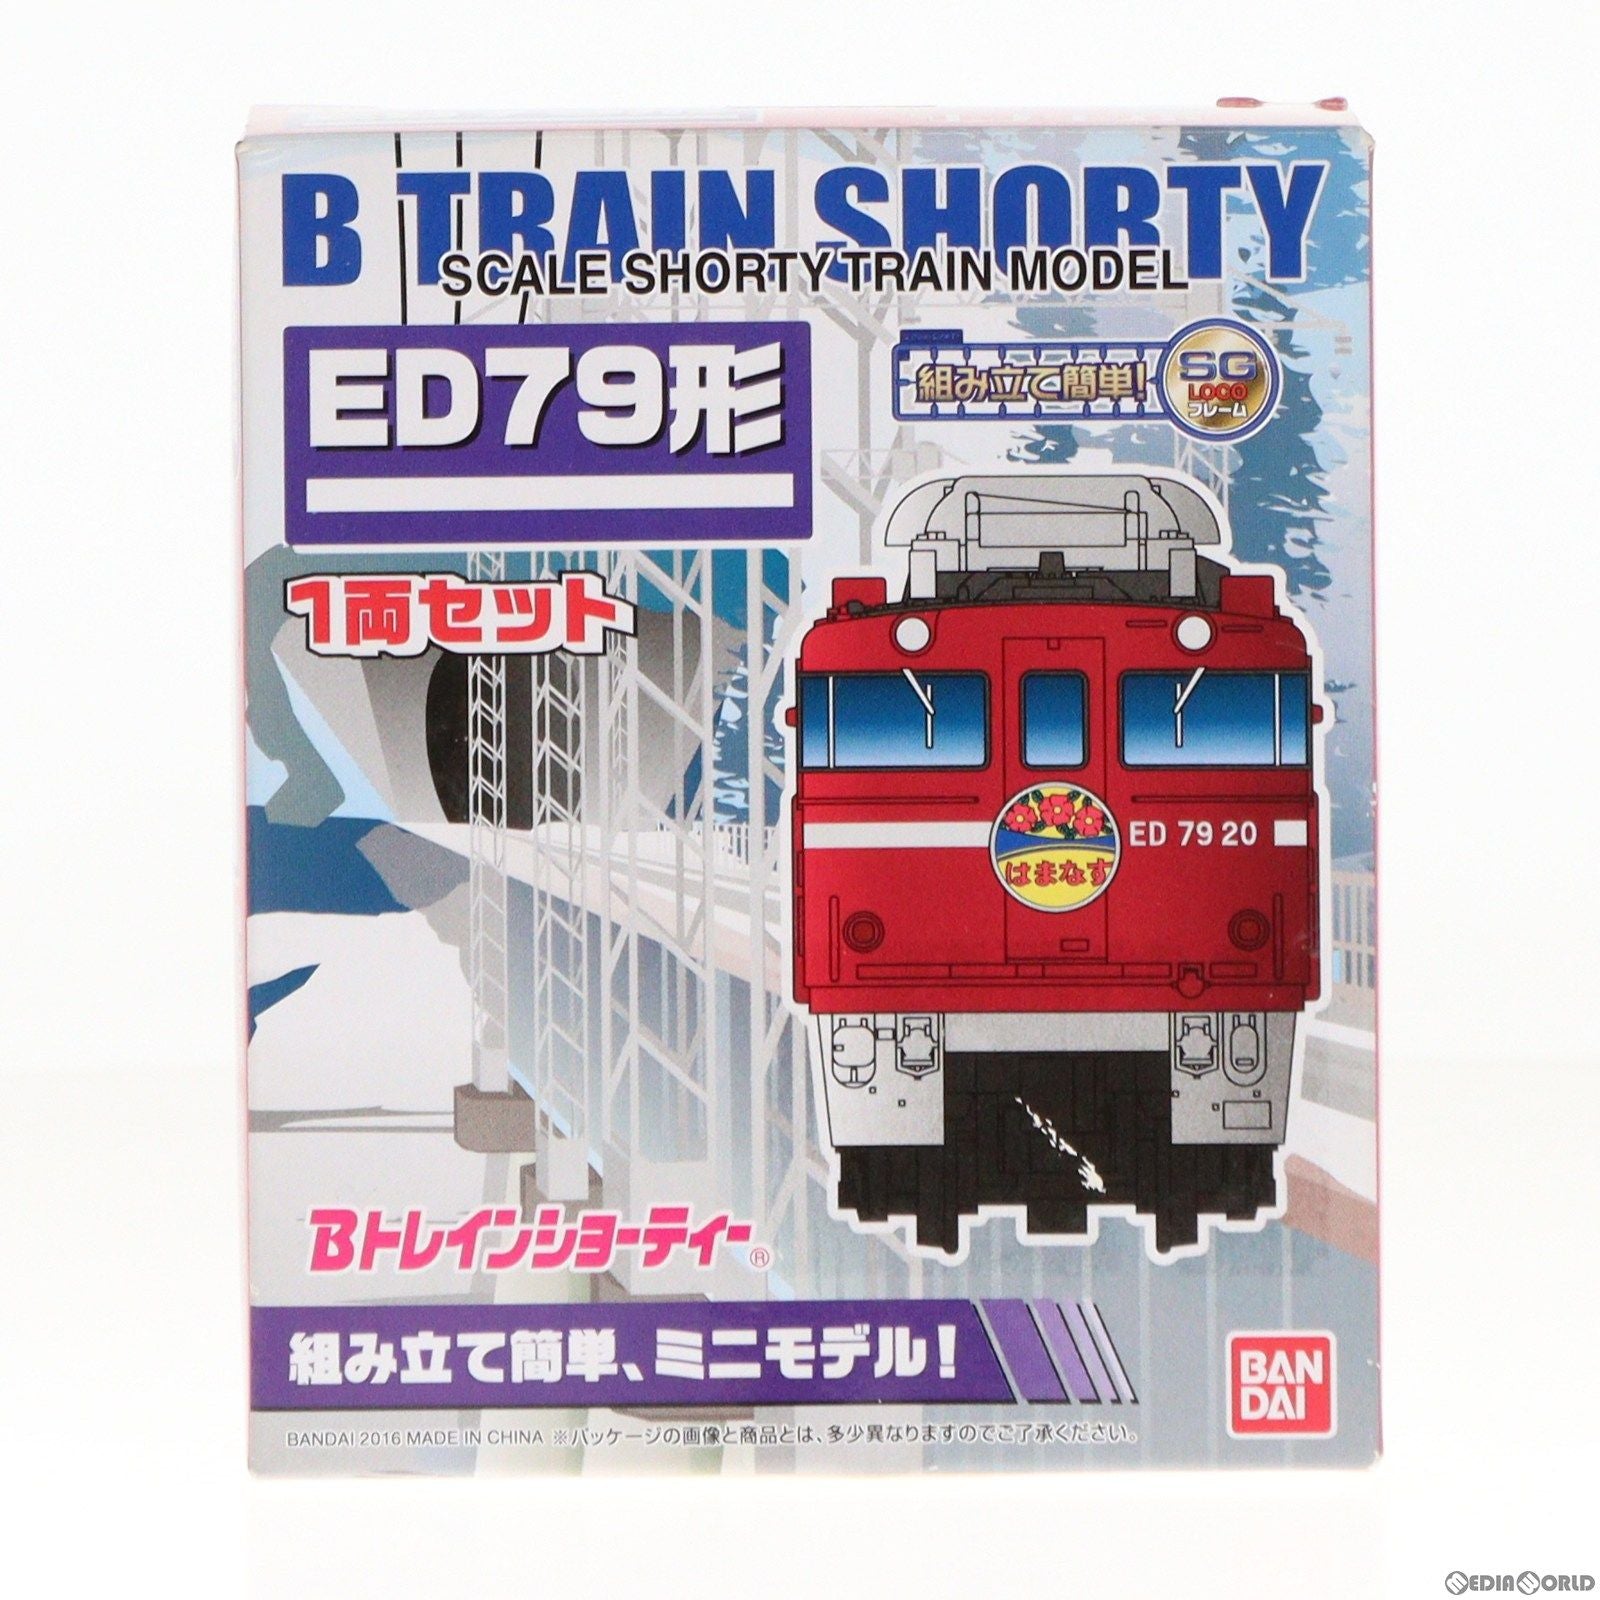 【中古即納】[RWM]078654 Bトレインショーティー ED79形(ED75形) 1両セット 組み立てキット Nゲージ 鉄道模型(20160625)